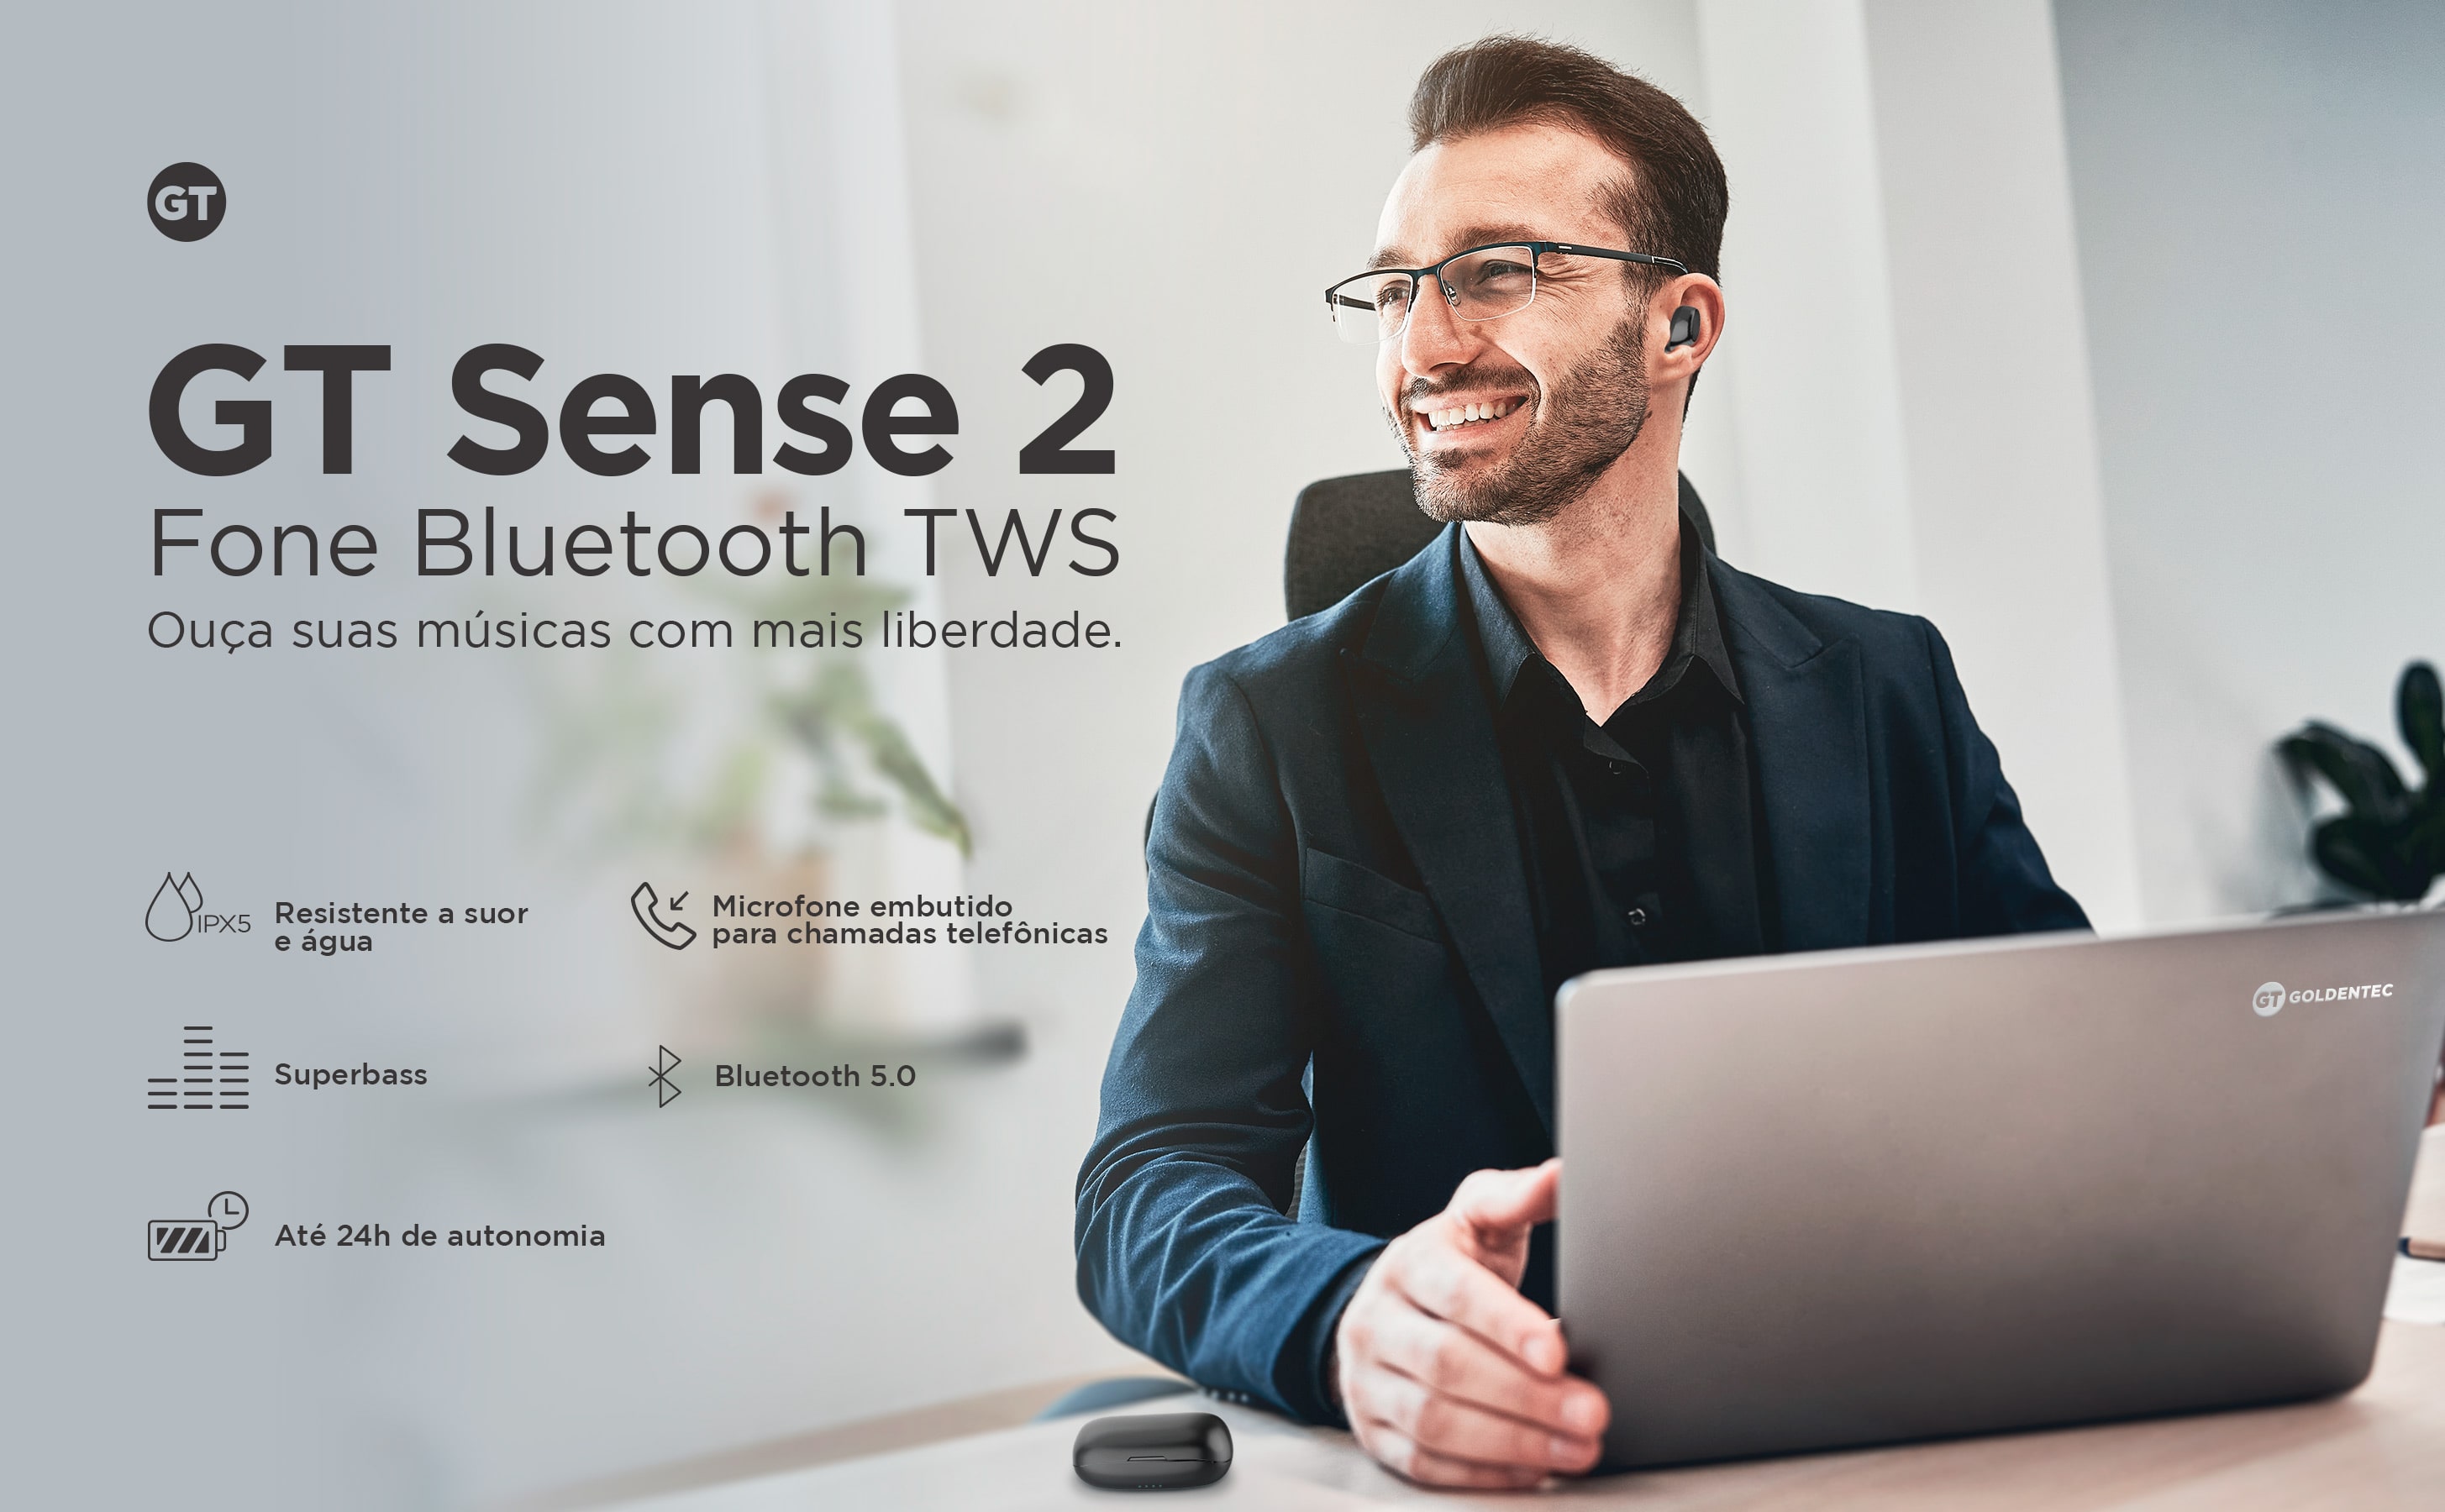 Fone de Ouvido TWS GT Sense 2 com Case Carregadora | Goldentec